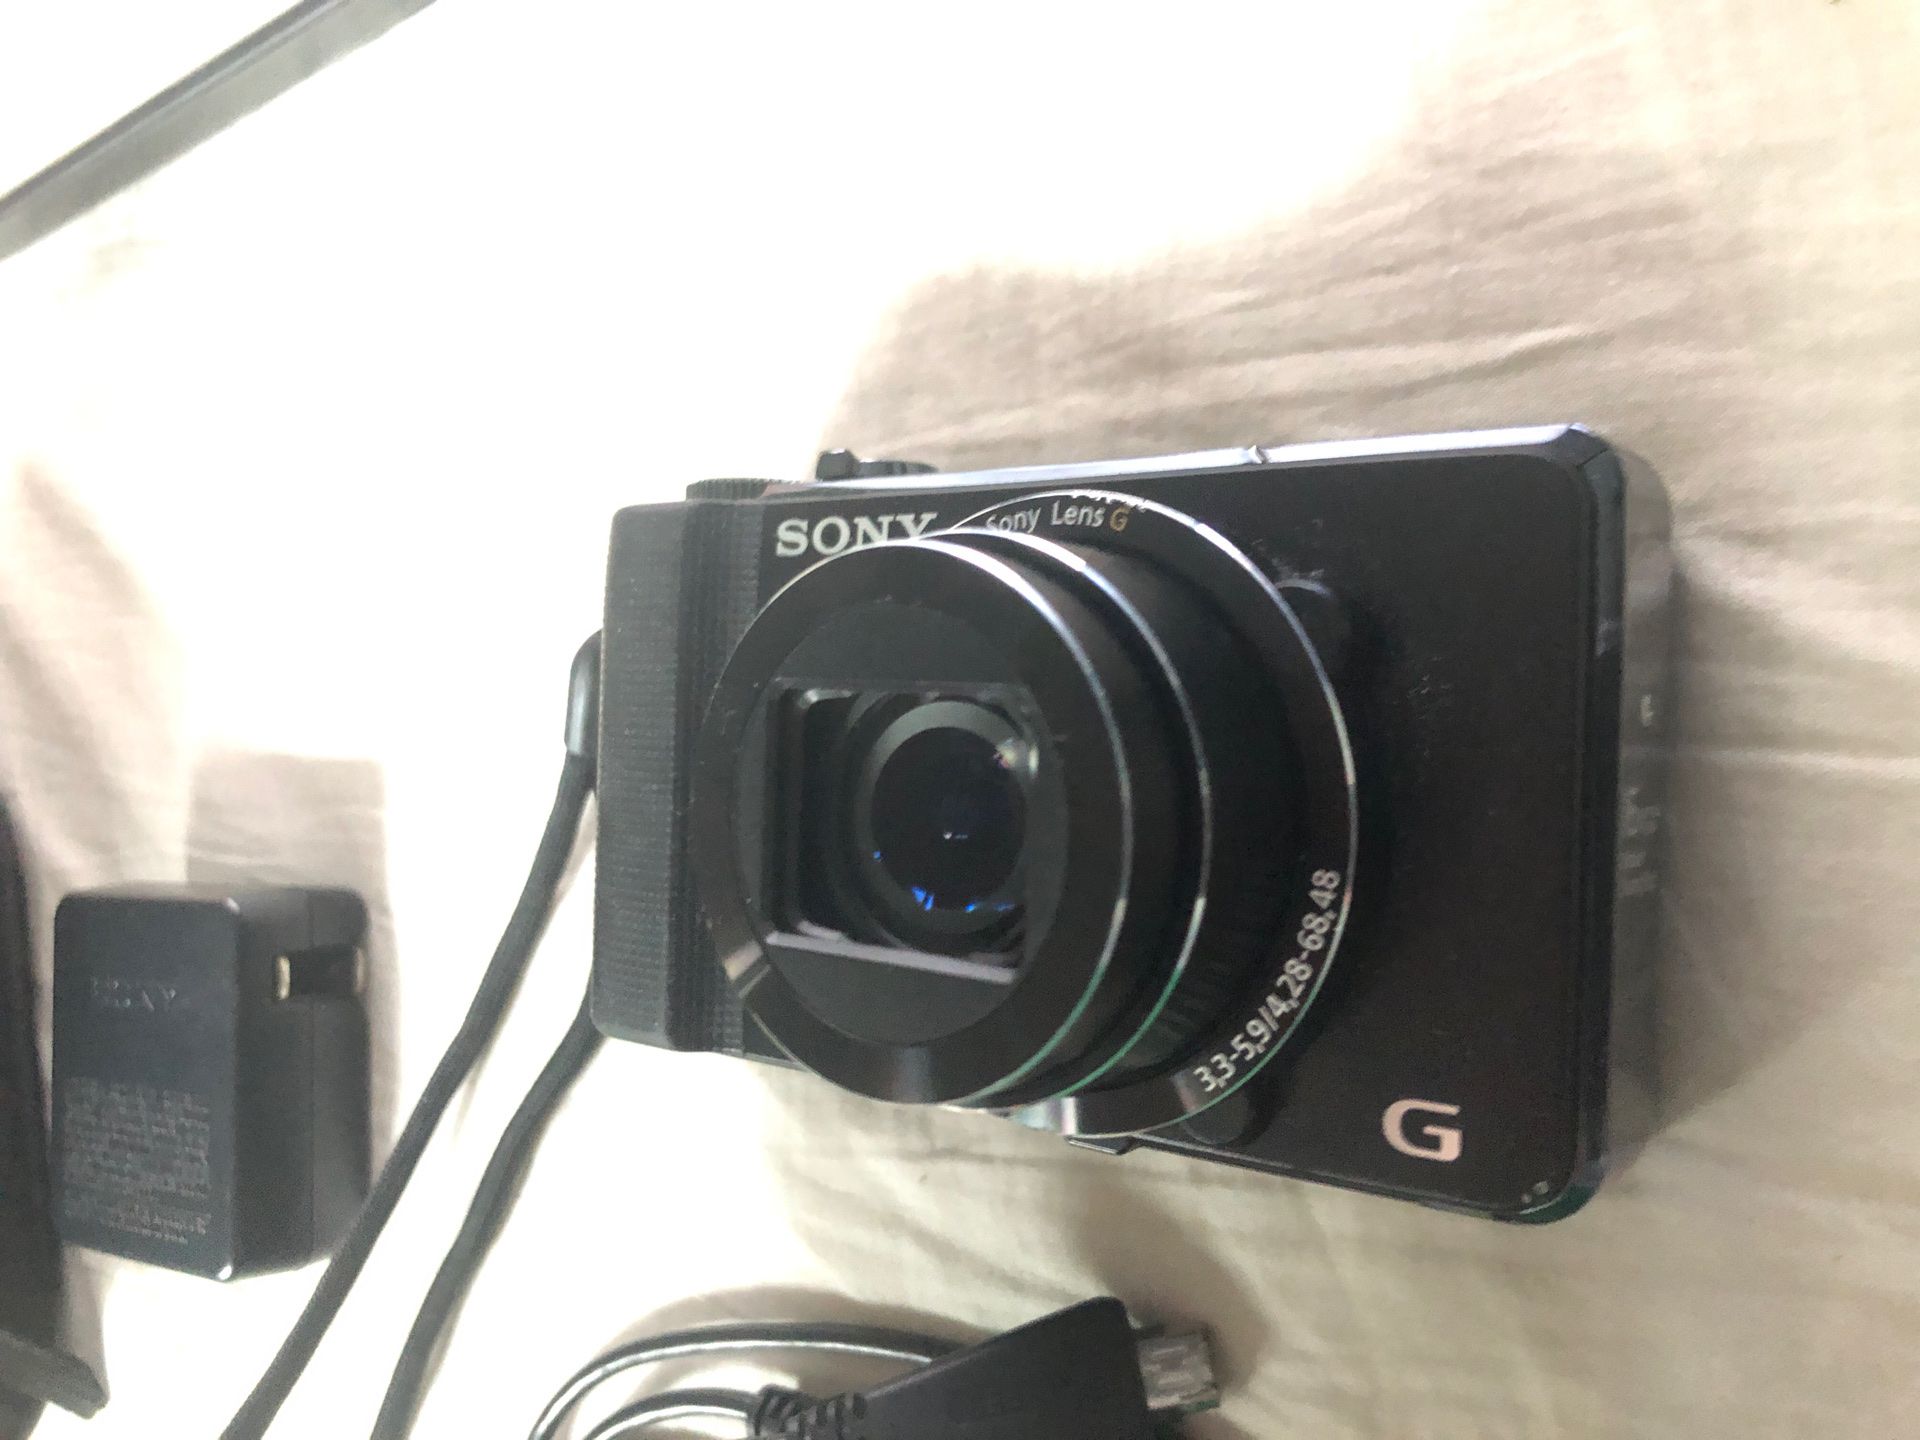 Sony DSC-HX9V Digital Camera